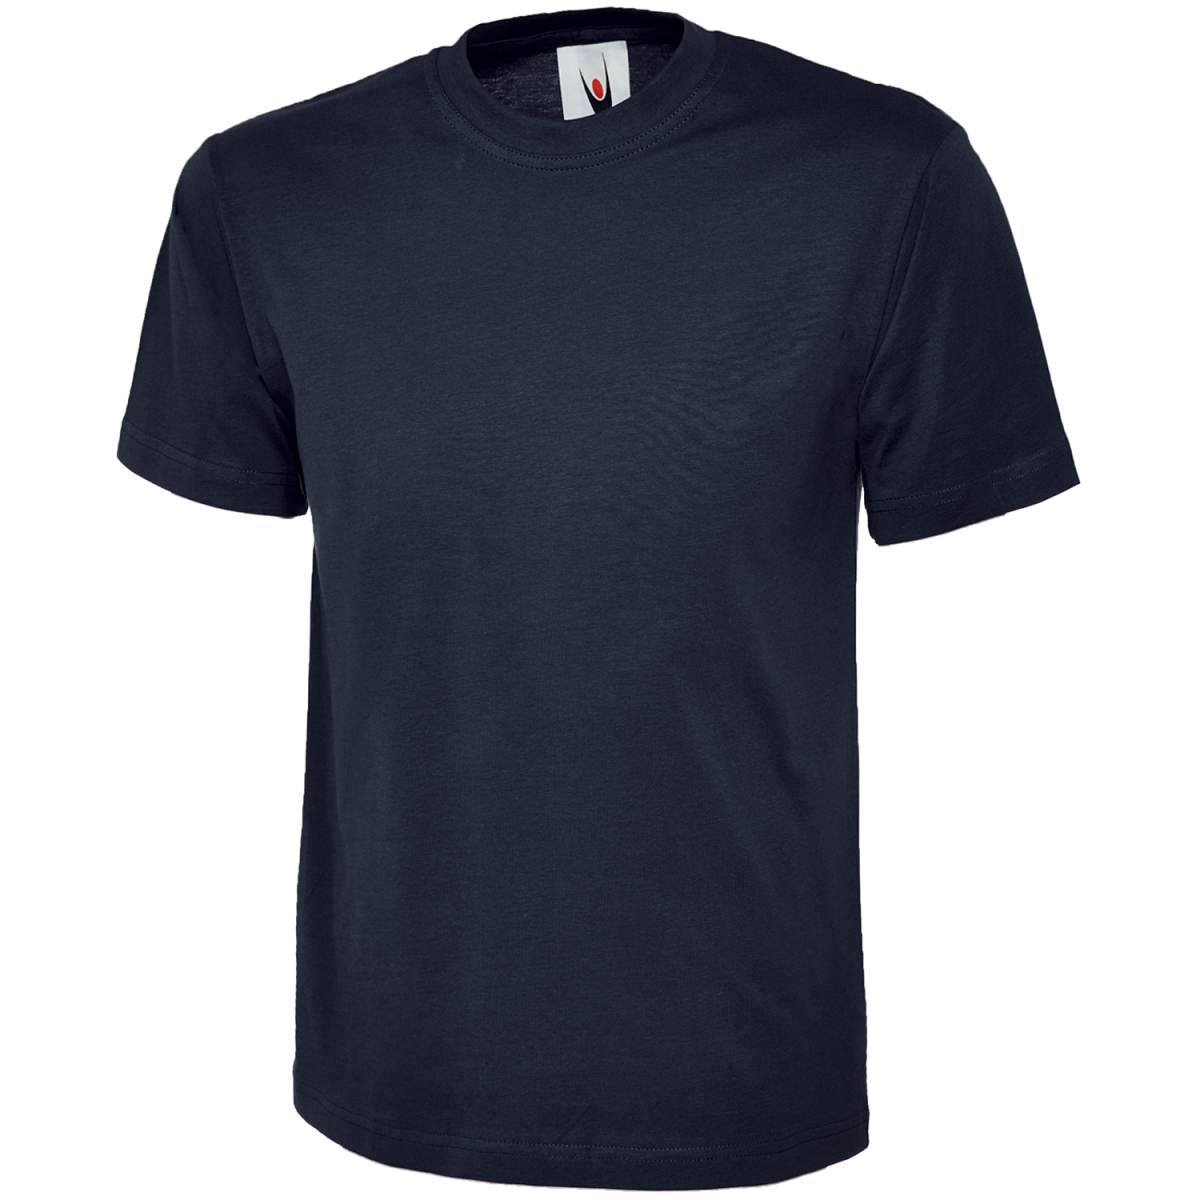 Moderne und 4,49 - elysee, € Modell T-Shirts ULRICH ergonomische